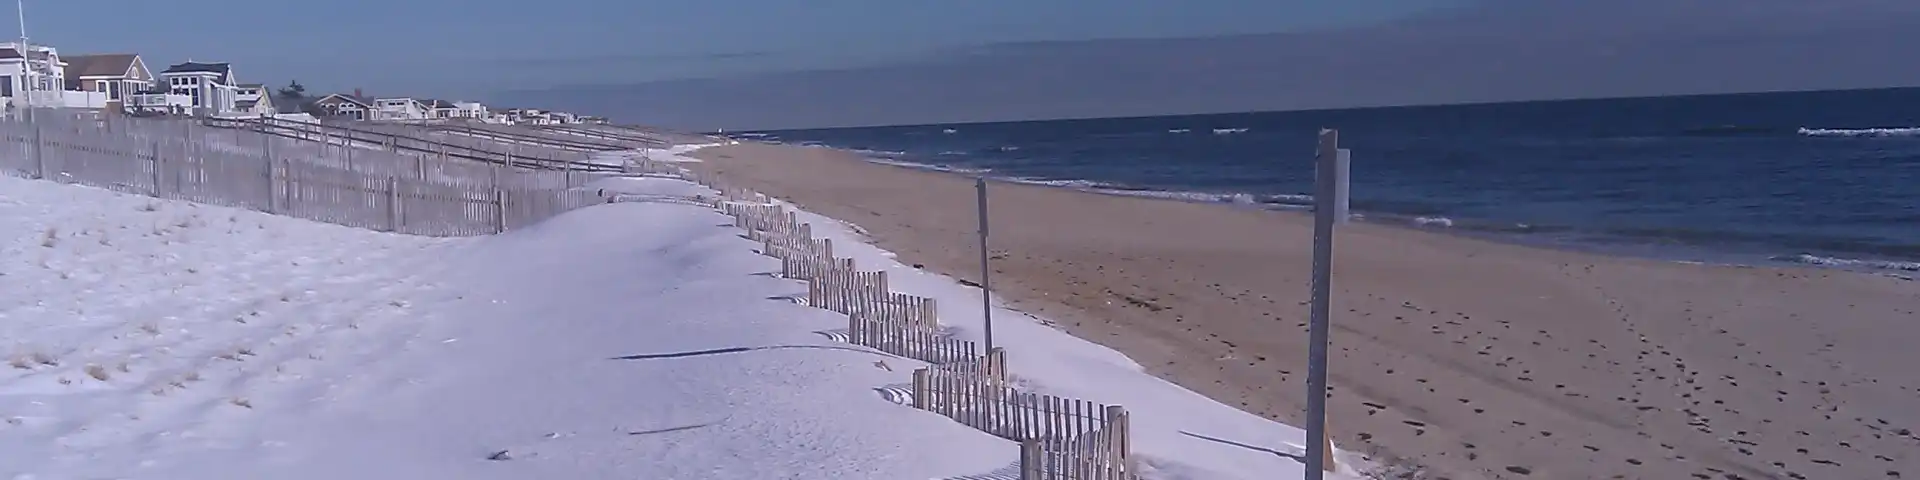 Snow on the Beach